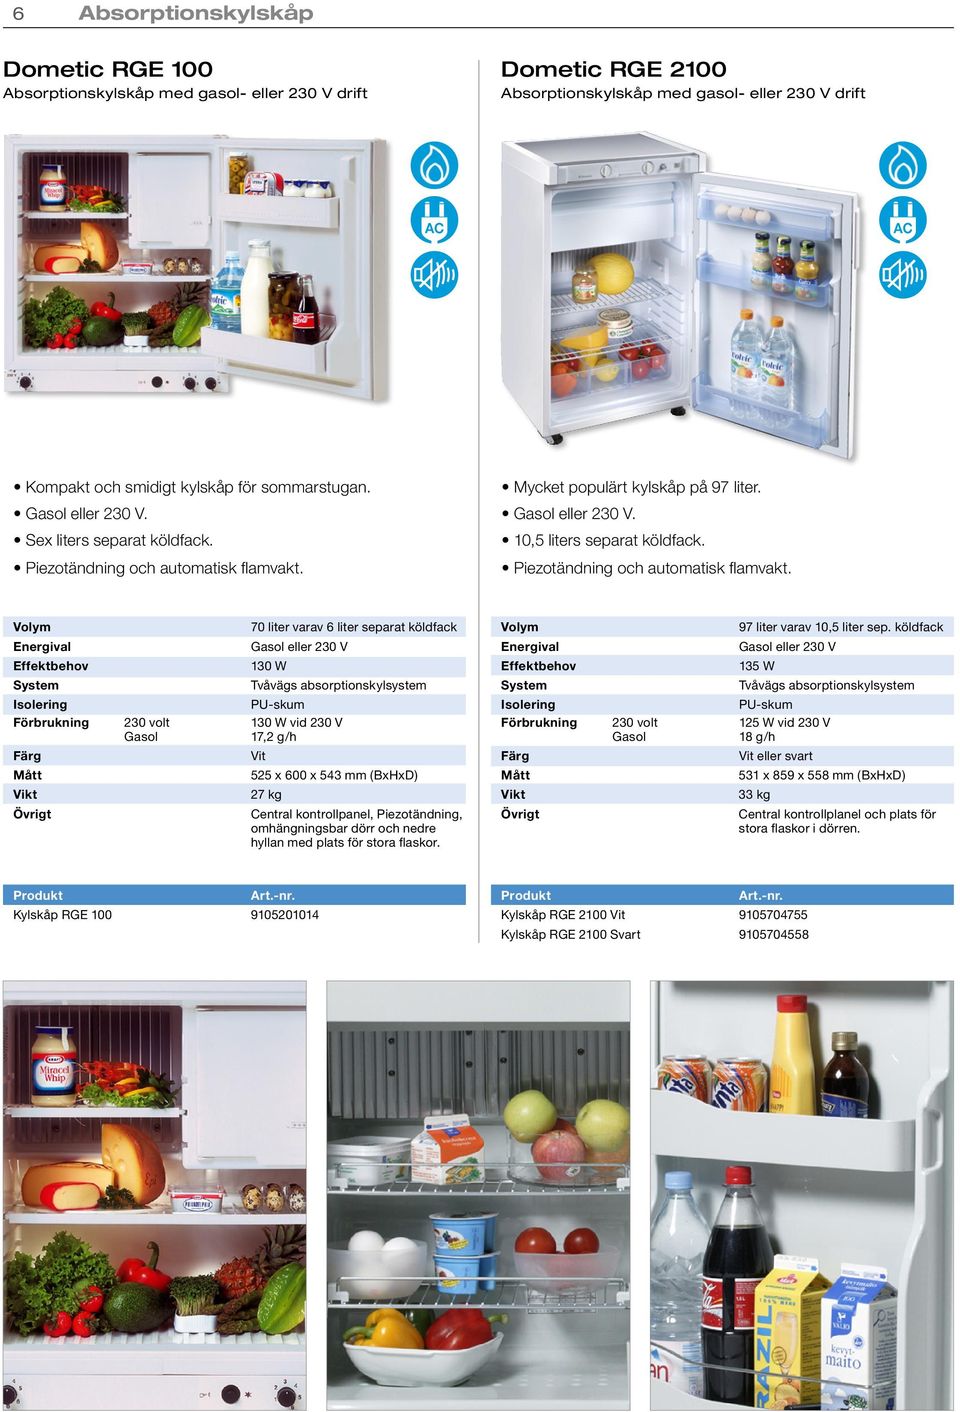 Mycket populärt kylskåp på 97 liter. Gasol eller. 10,5 liters separat köldfack. Piezotändning och automatisk flamvakt.